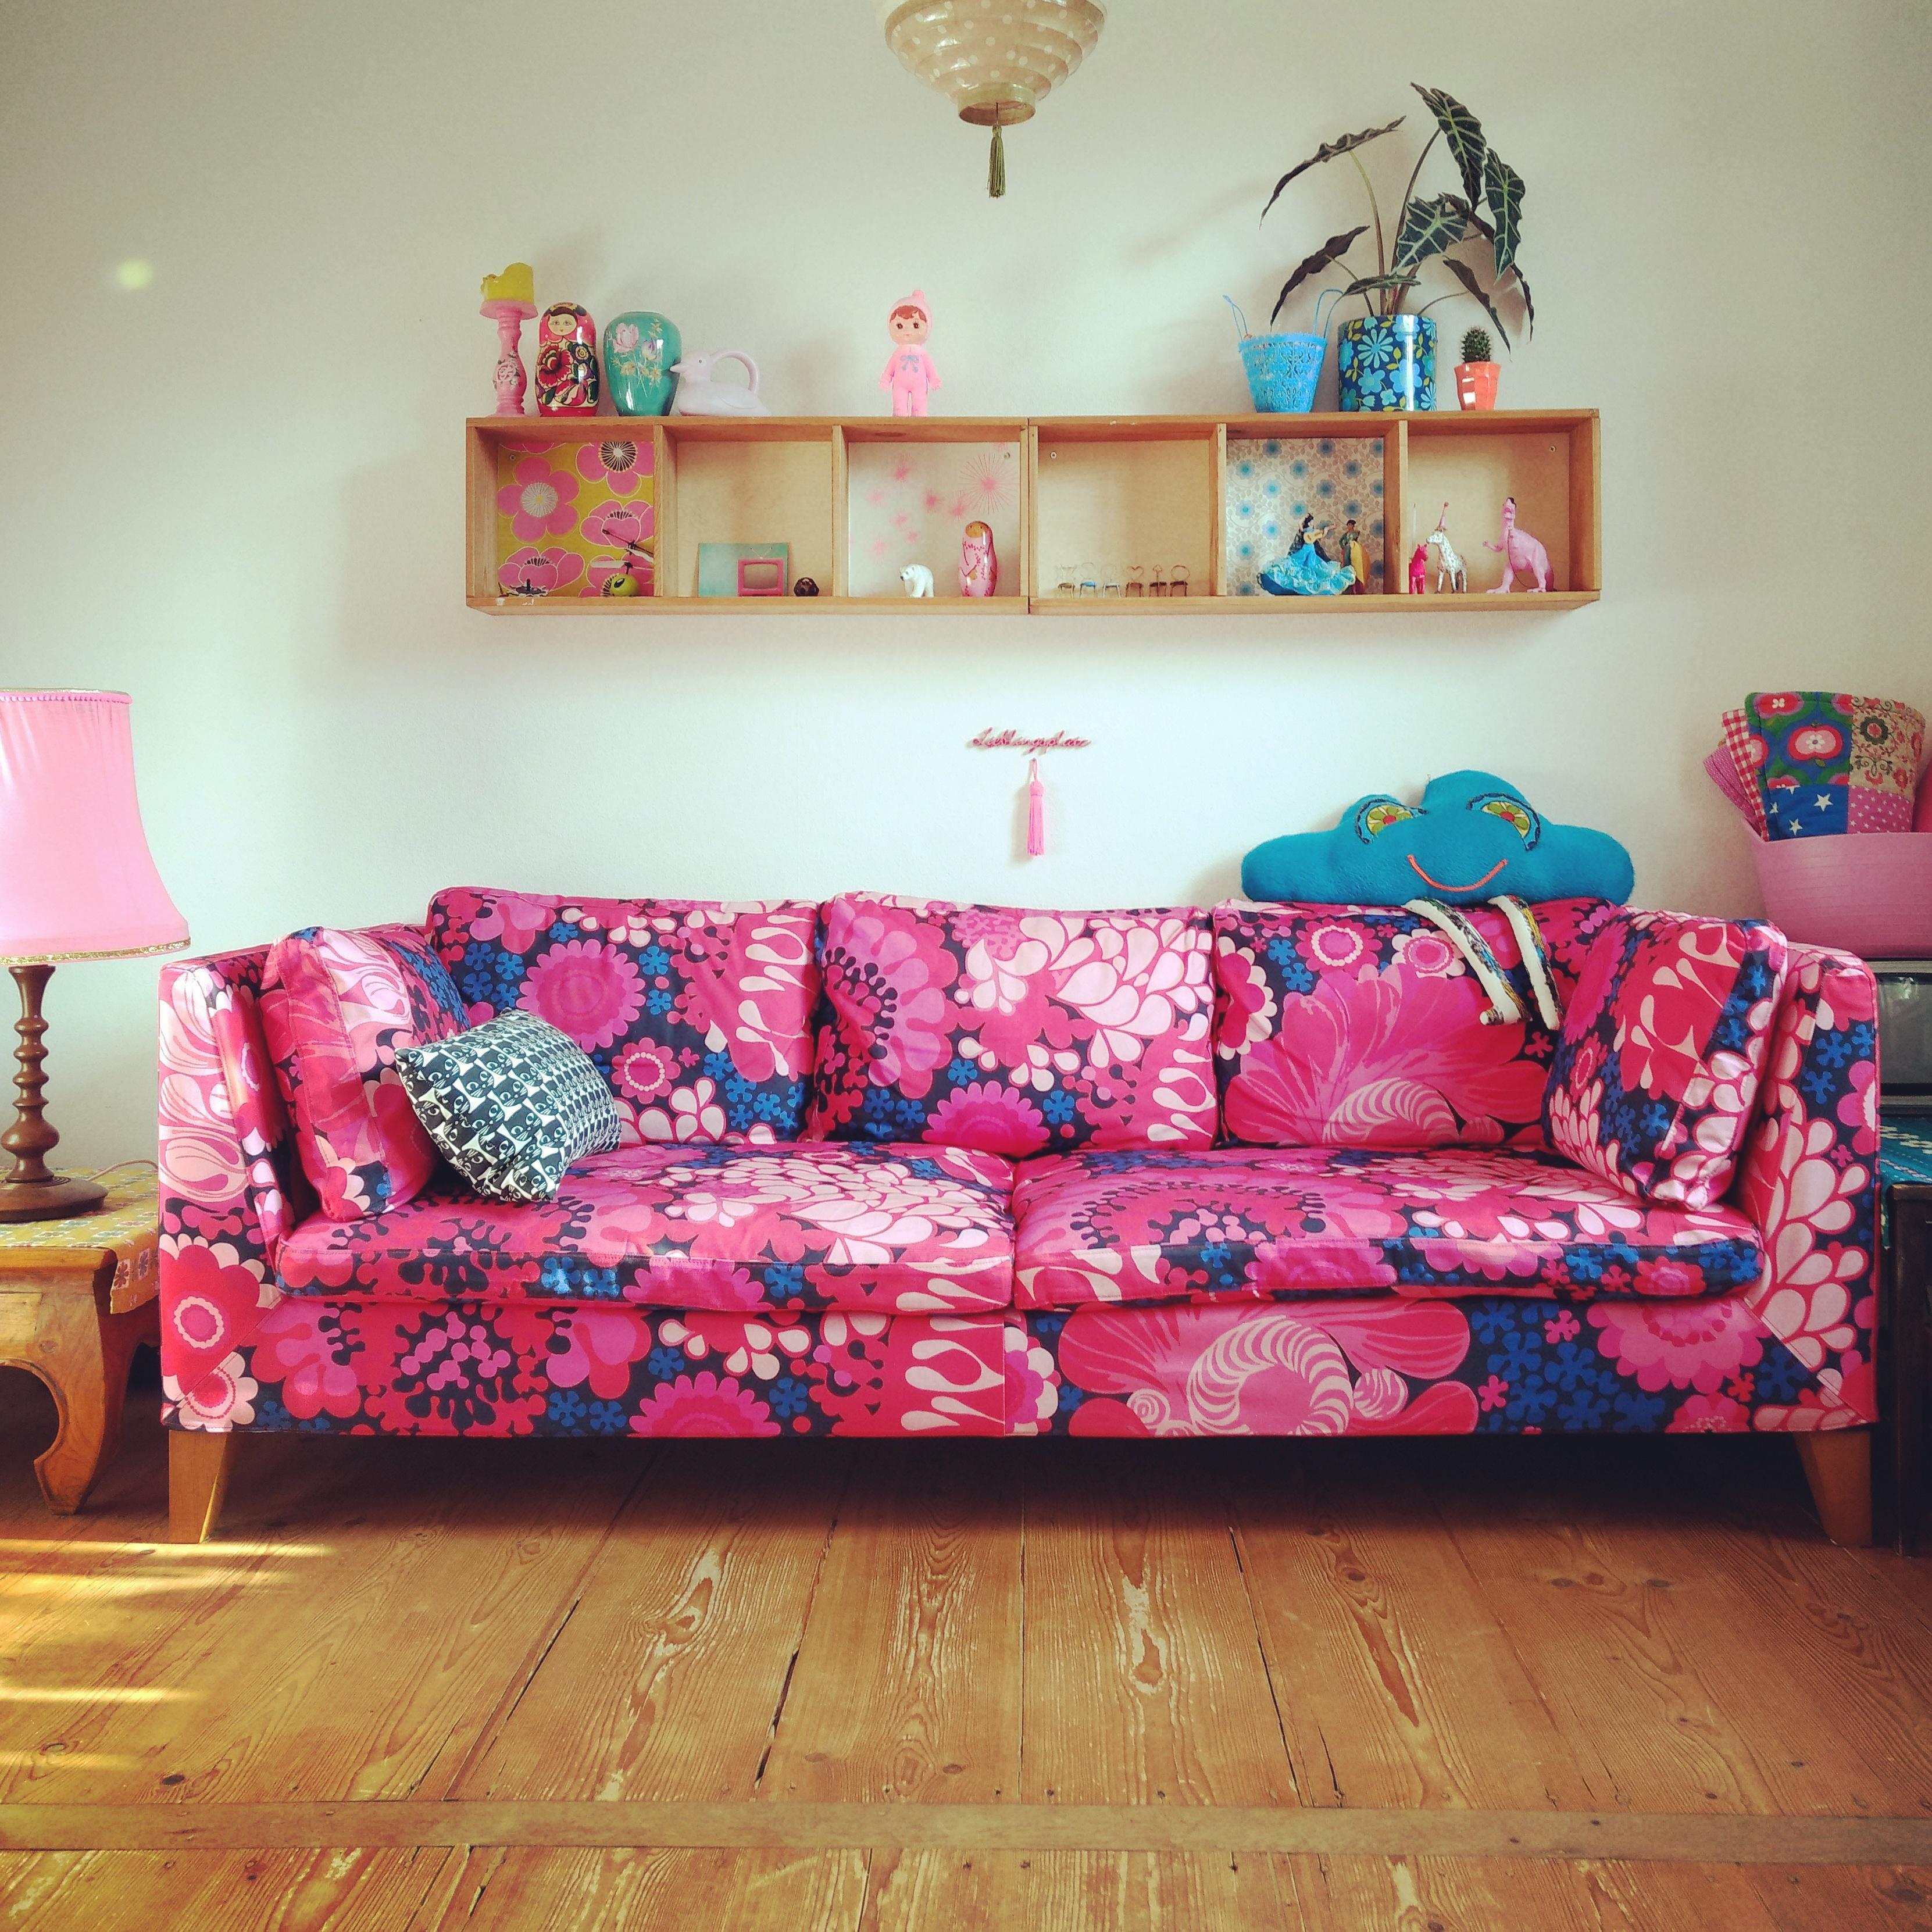 Unser "neues" Ikea Sofa mit einem blumigen Bezug von Bemz Design. Und noch eine Portion Sonne dazu✨
#couchstyle